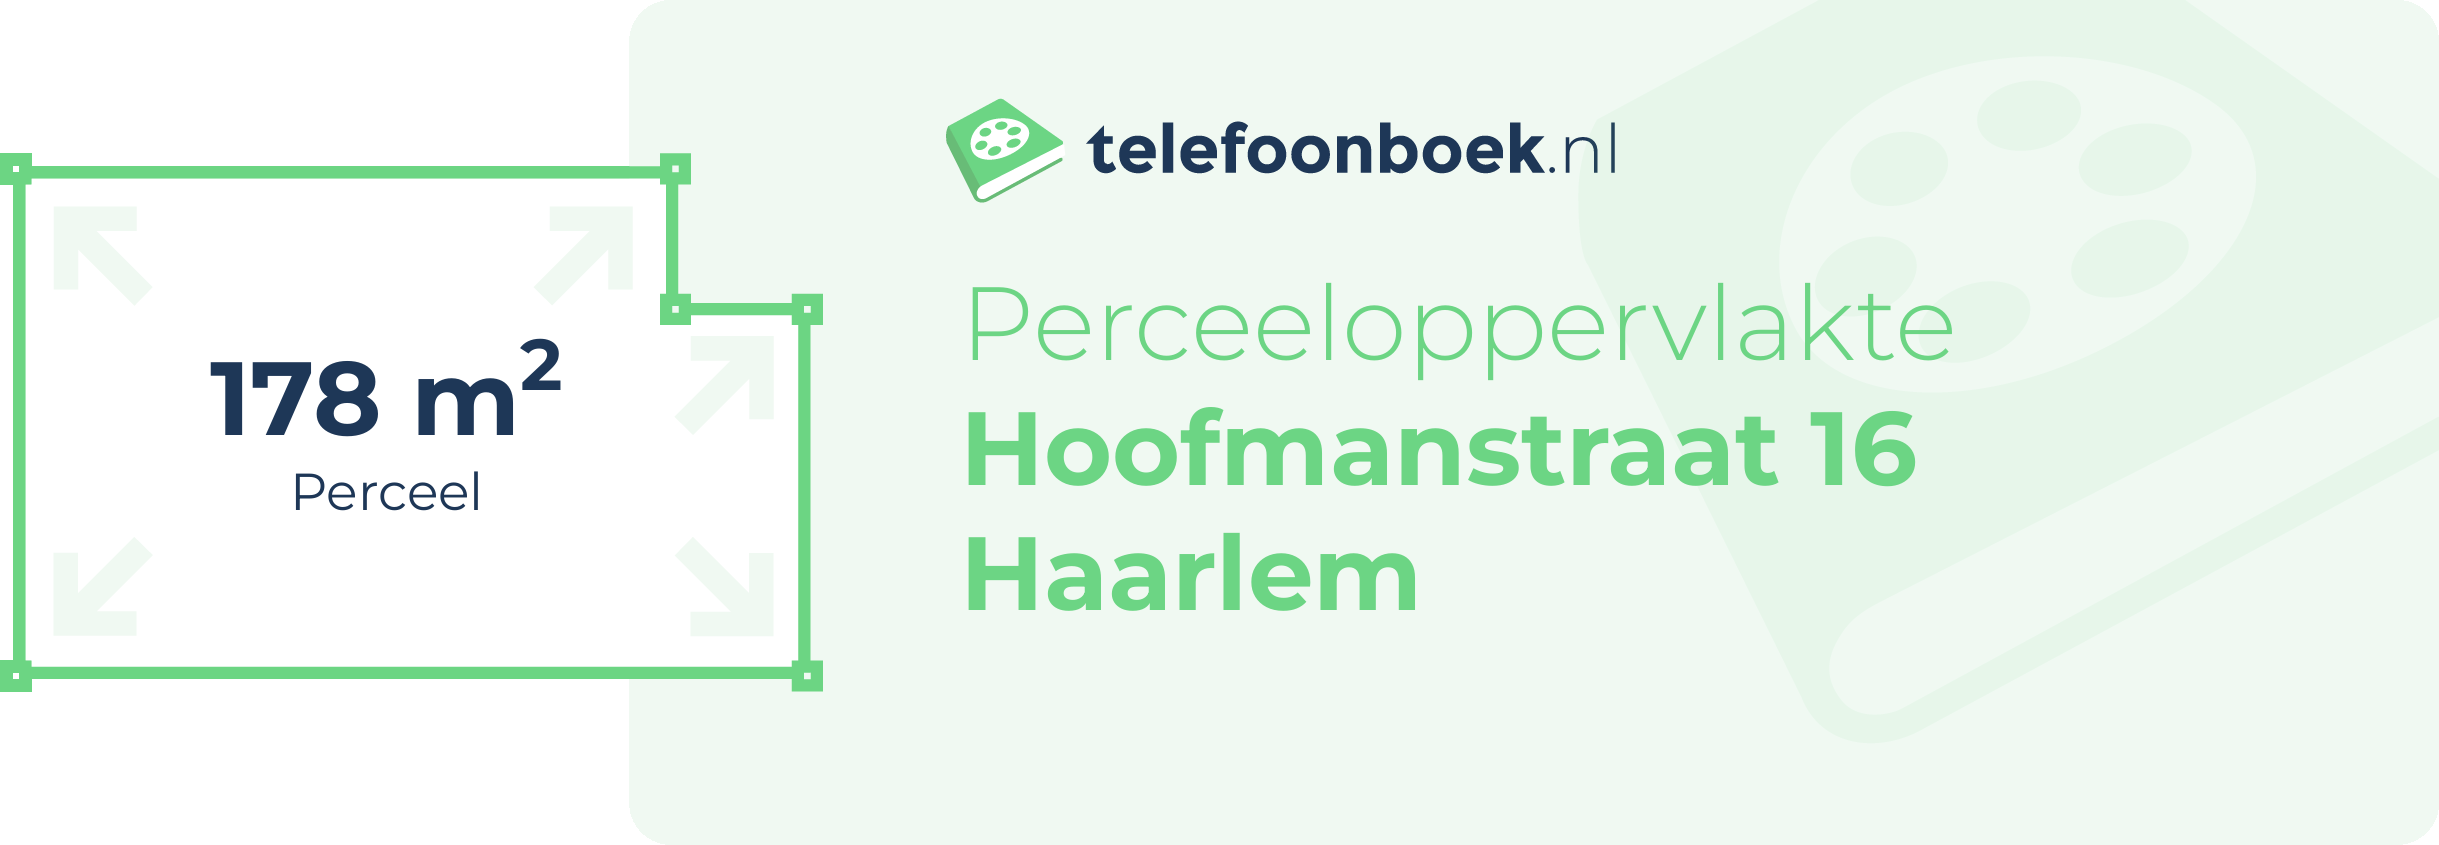 Perceeloppervlakte Hoofmanstraat 16 Haarlem